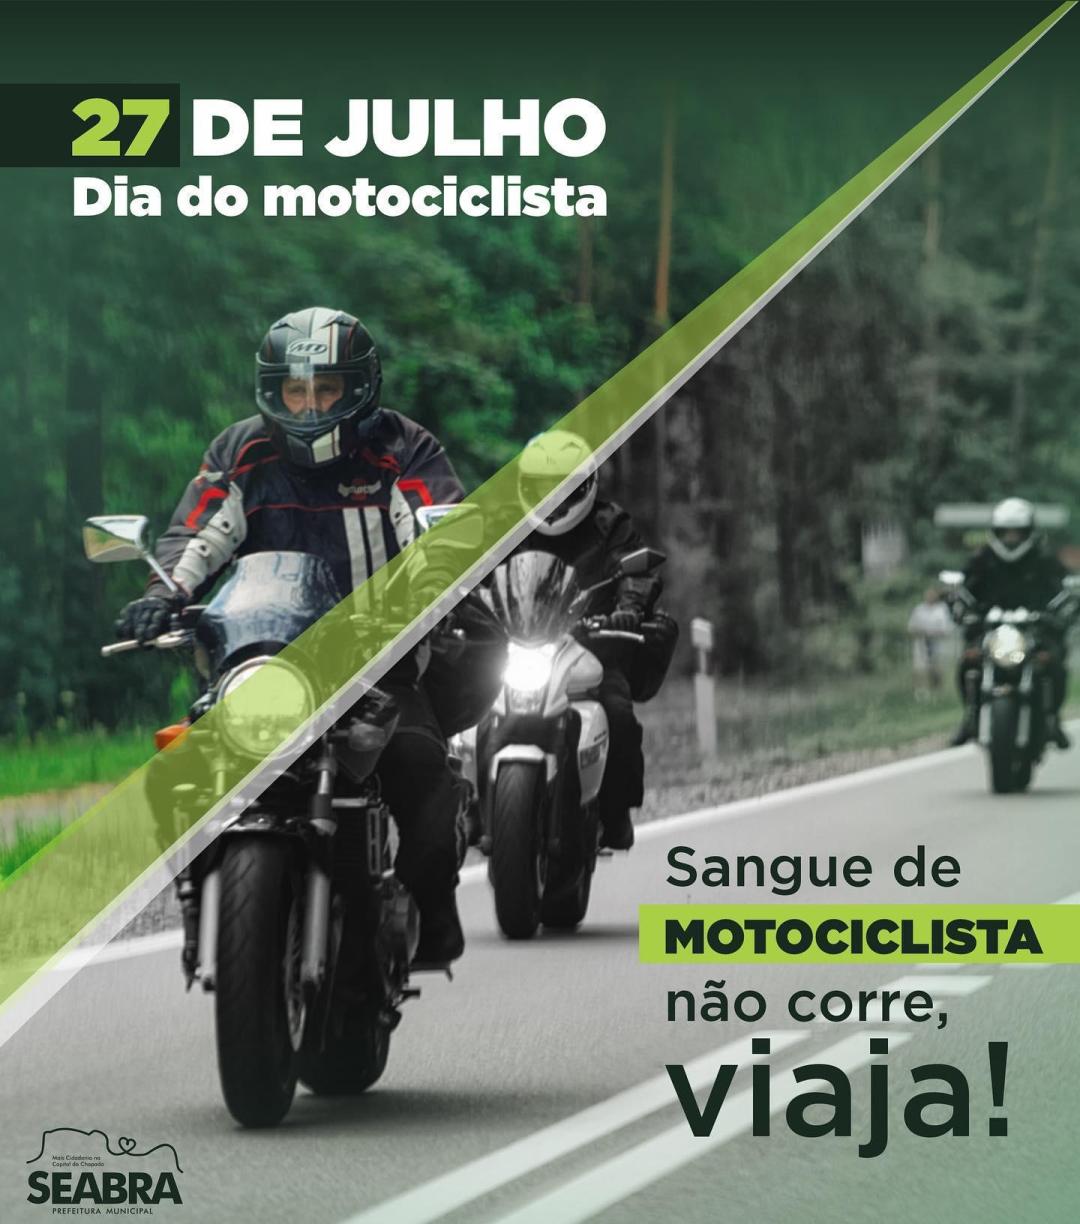 O Dia Nacional do Motociclista é comemorado em 27 de julho.